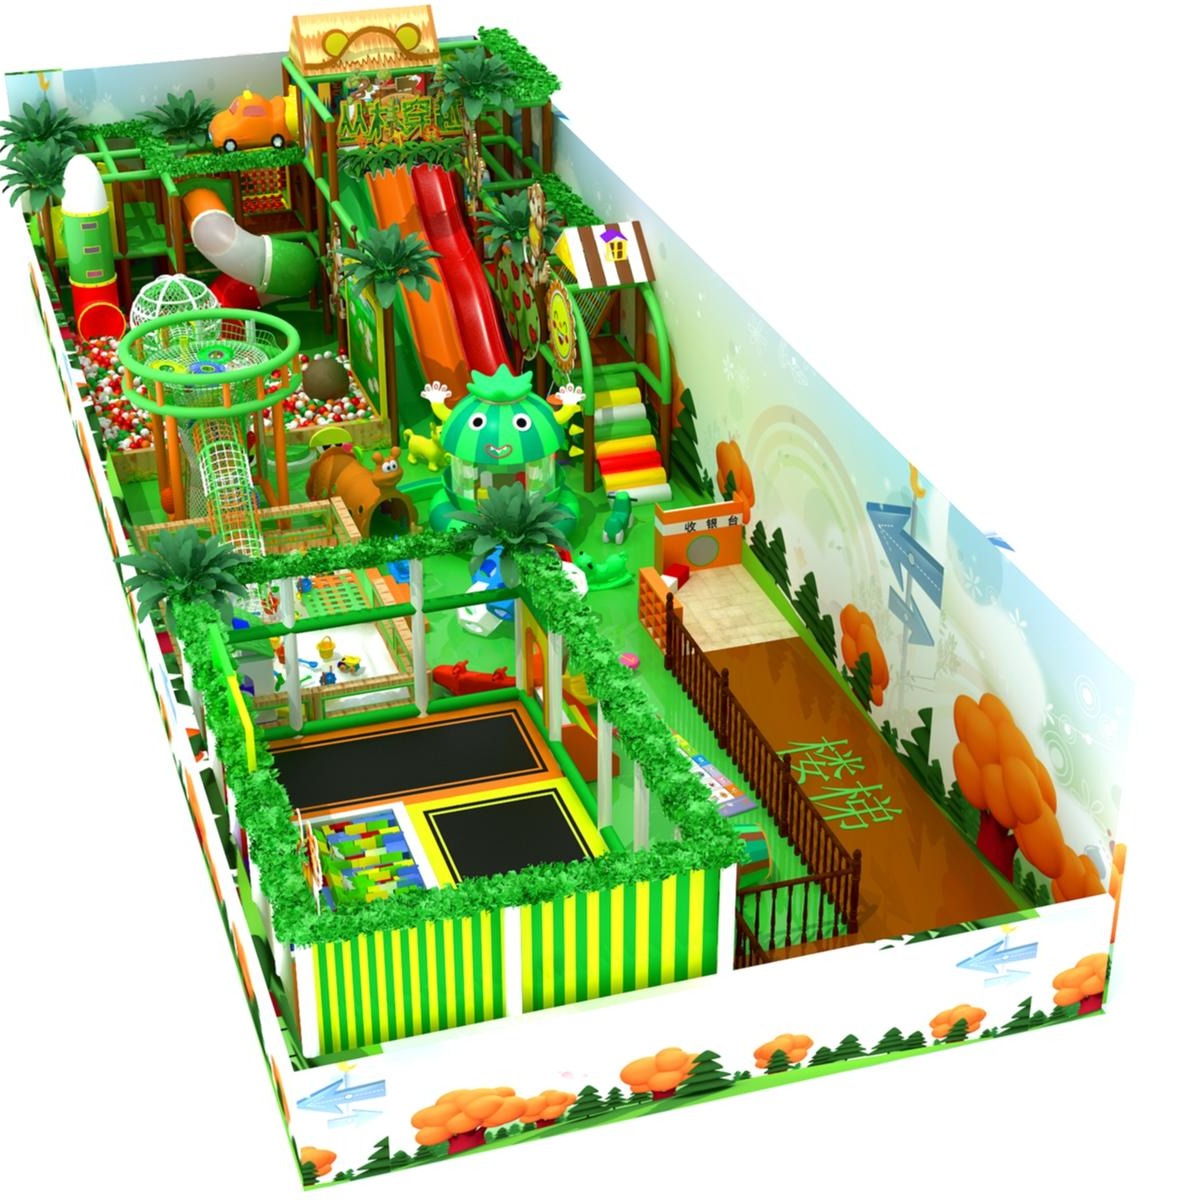 森林三层淘气堡   淘气堡设备  淘气堡  儿童乐园设备  图影滑梯